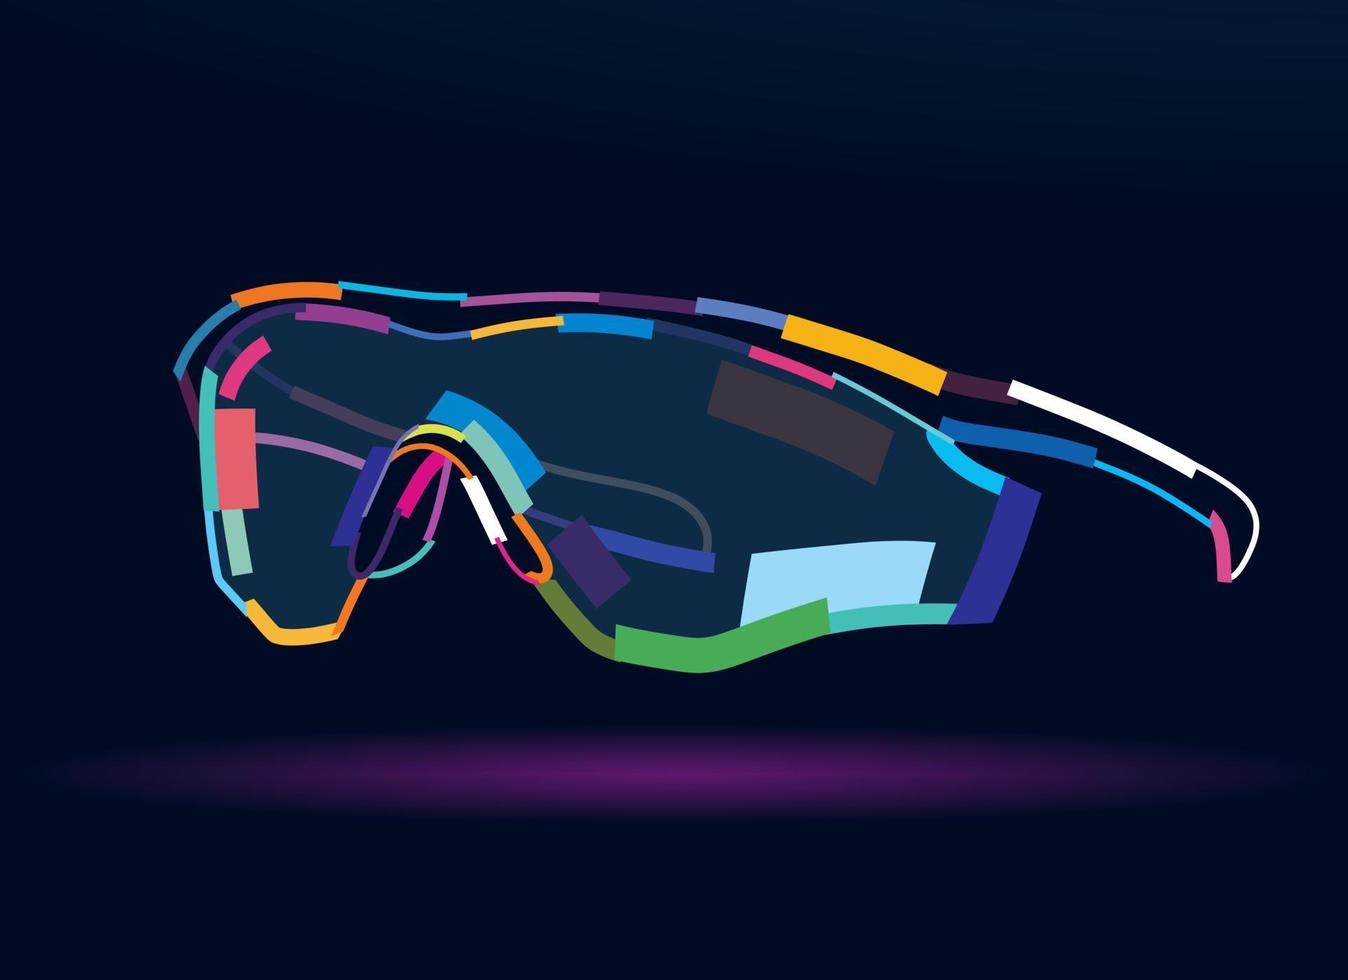 abstracte fietszonnebril. moderne stijlvolle sportfietszonnebril van veelkleurige verf. gekleurde tekening. vectorillustratie van verf vector